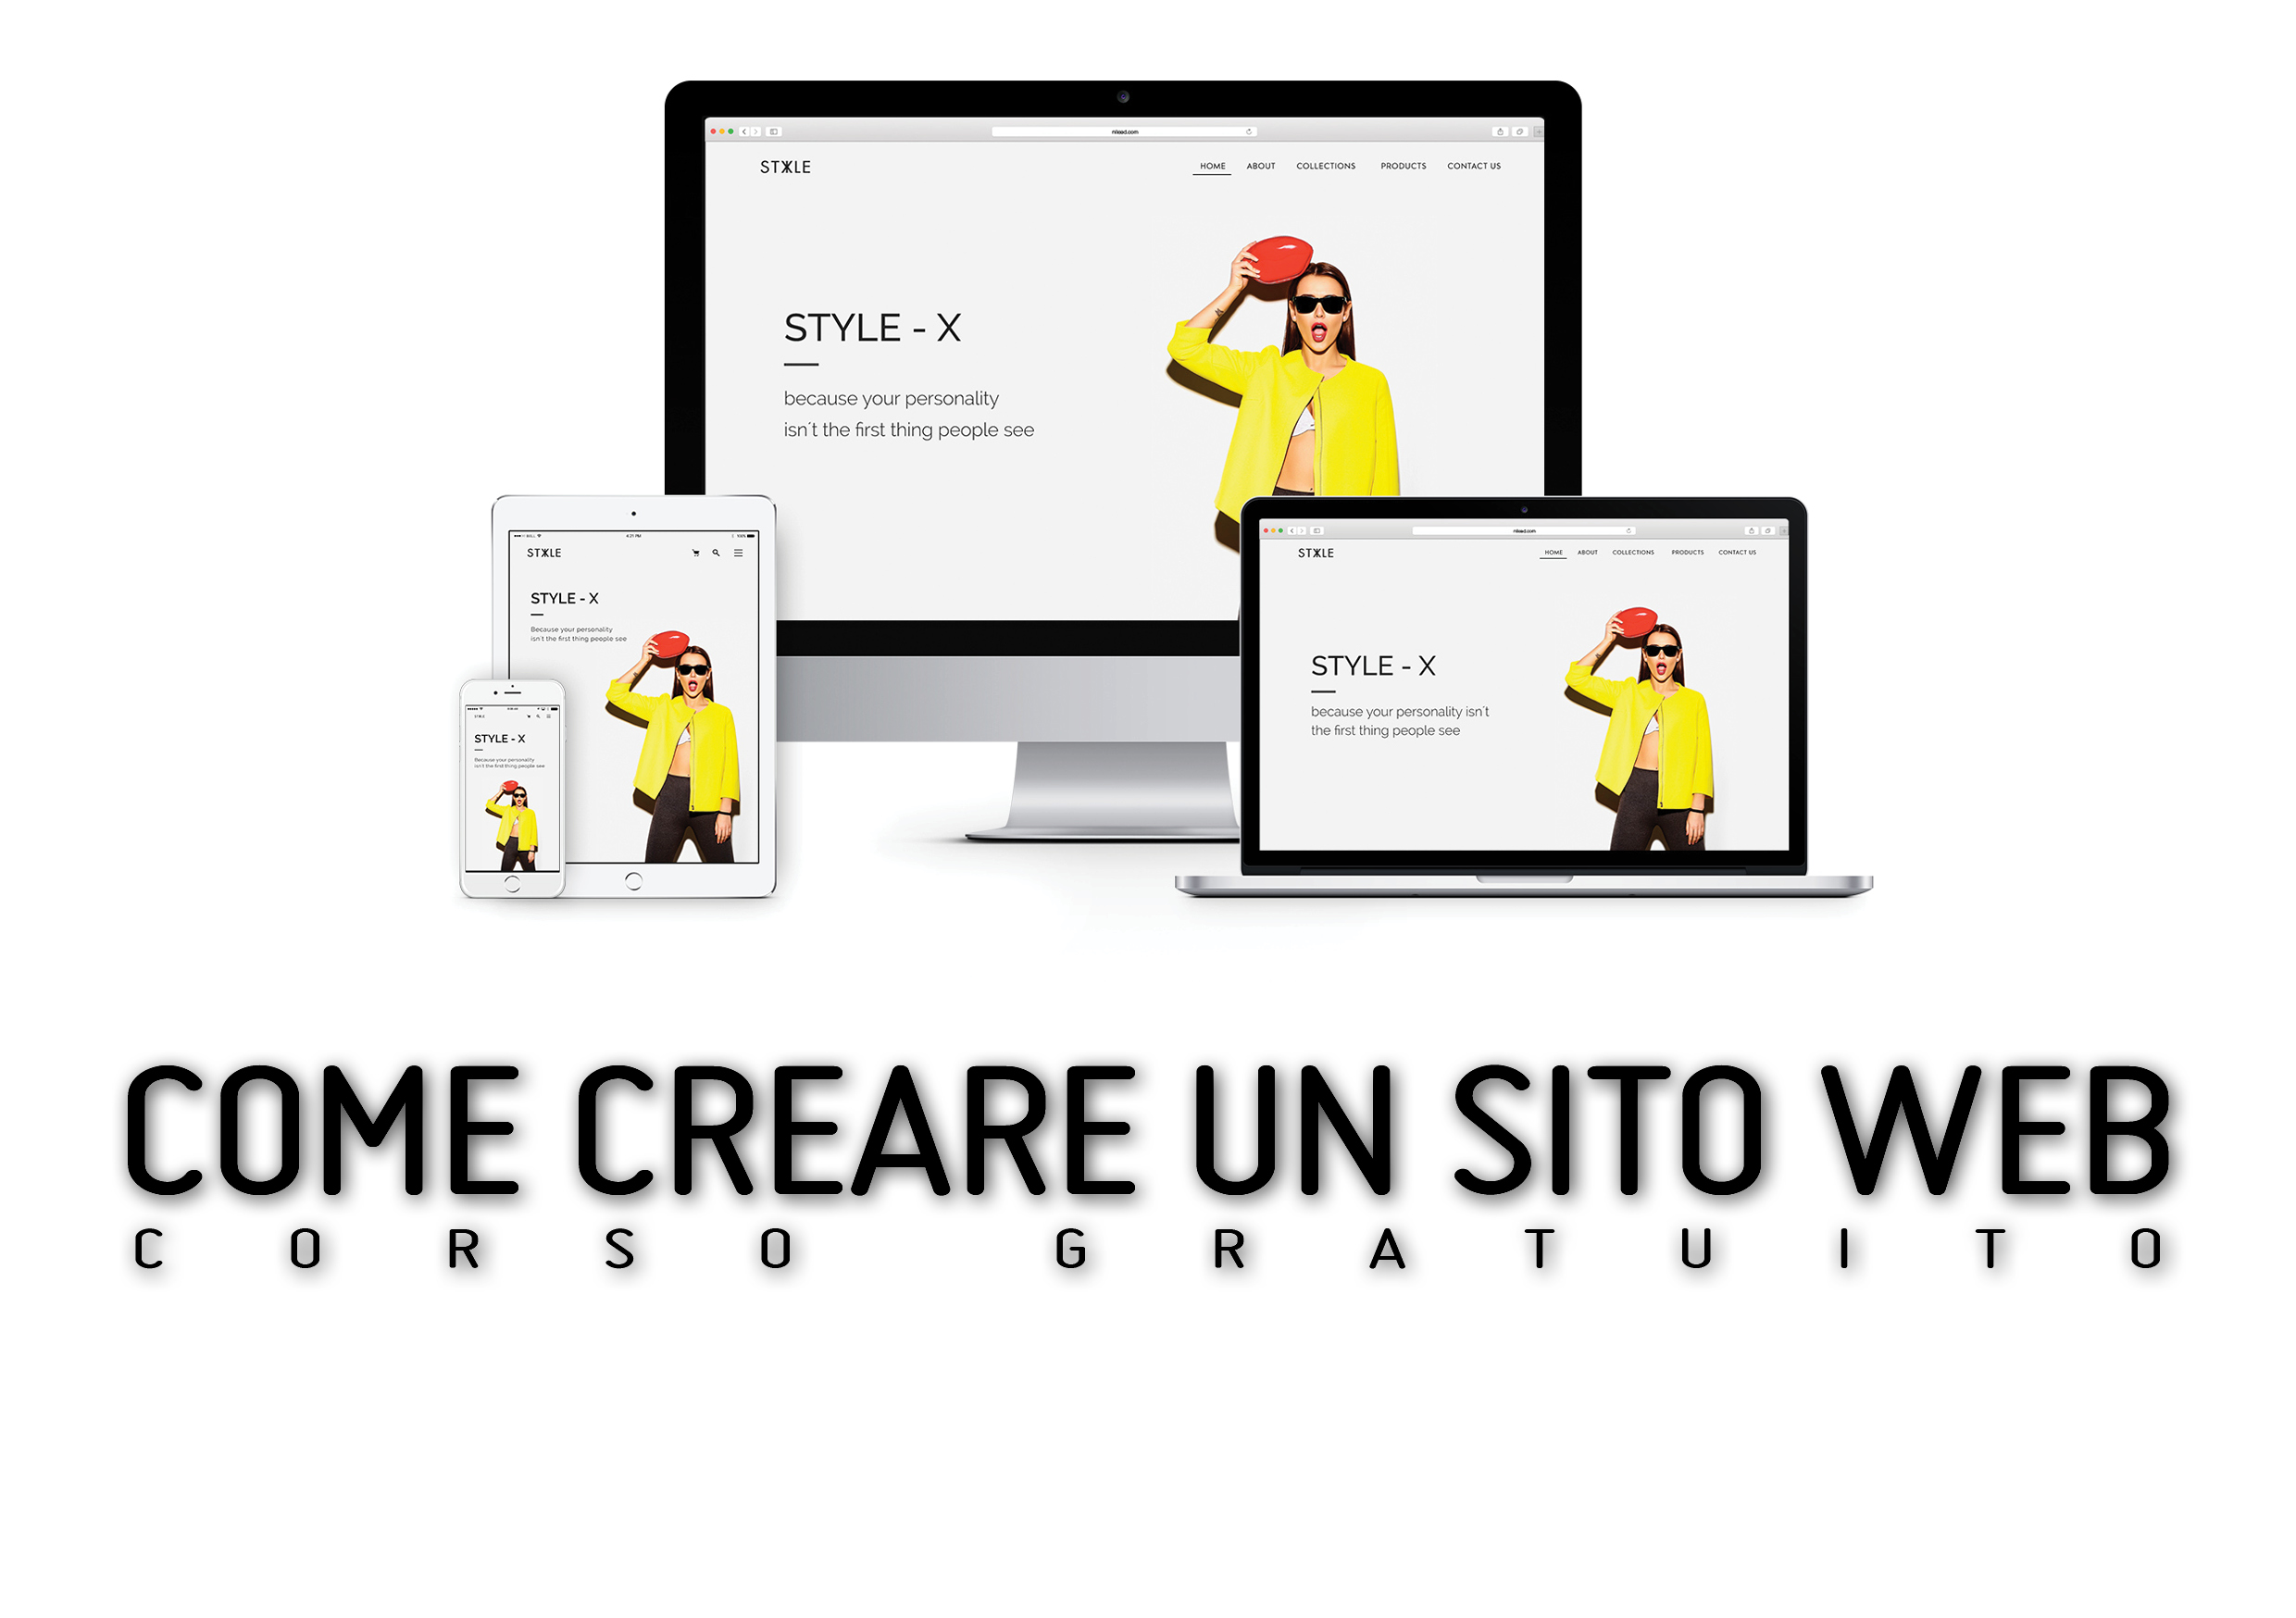 A4 Corso gratuito Come creare un sito web Milano Padova Bologna wordpress CMS 17112017